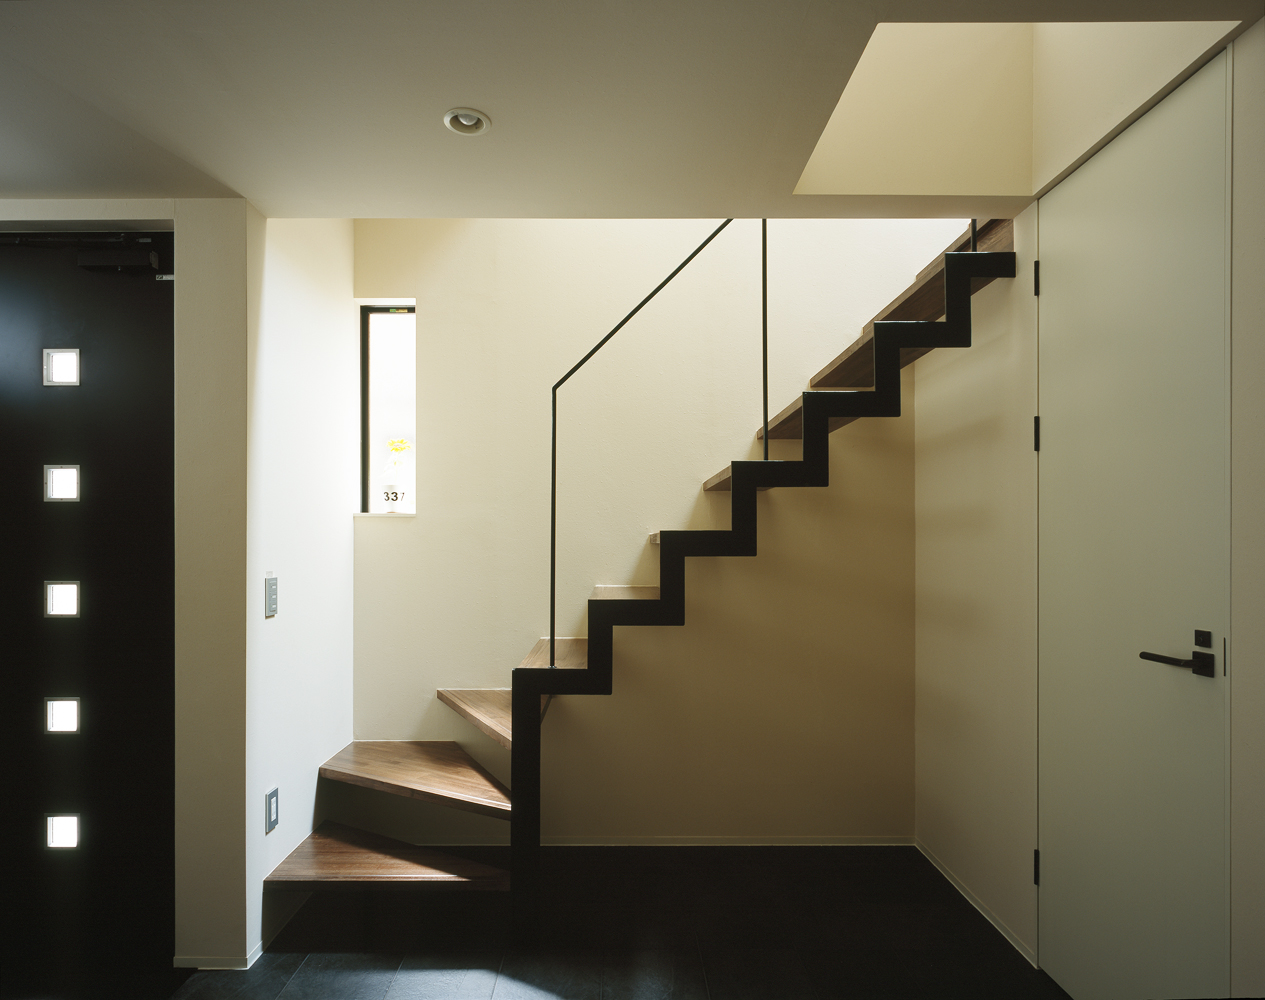 階段の種類 デザイン 設置場所 家の印象は 階段で大きく変わる